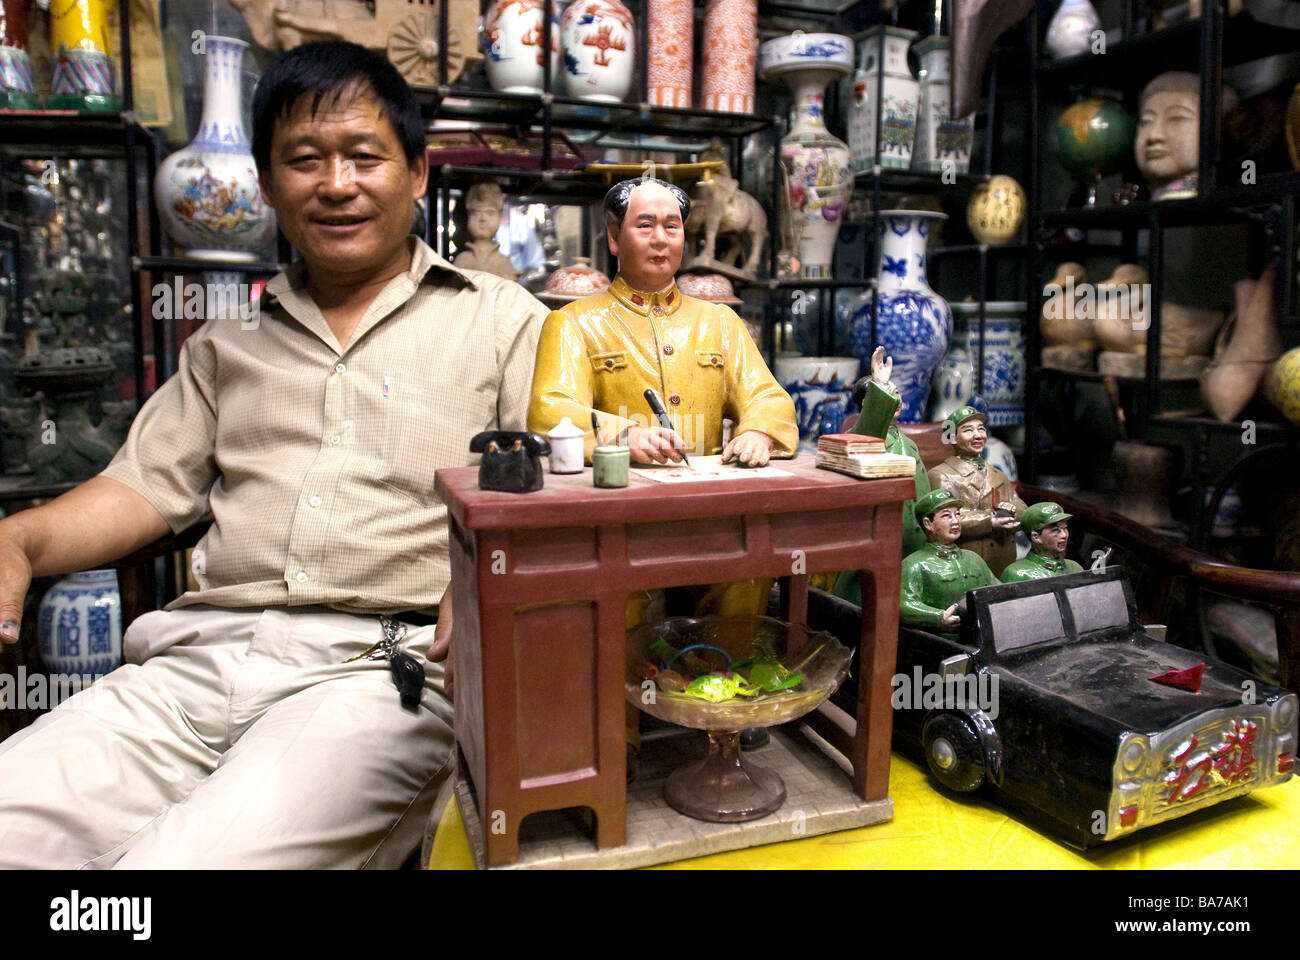 La Chine, Beijing, la vente d'objets whorshipping Mao Zedong sur l'Antique Dealer's street Banque D'Images